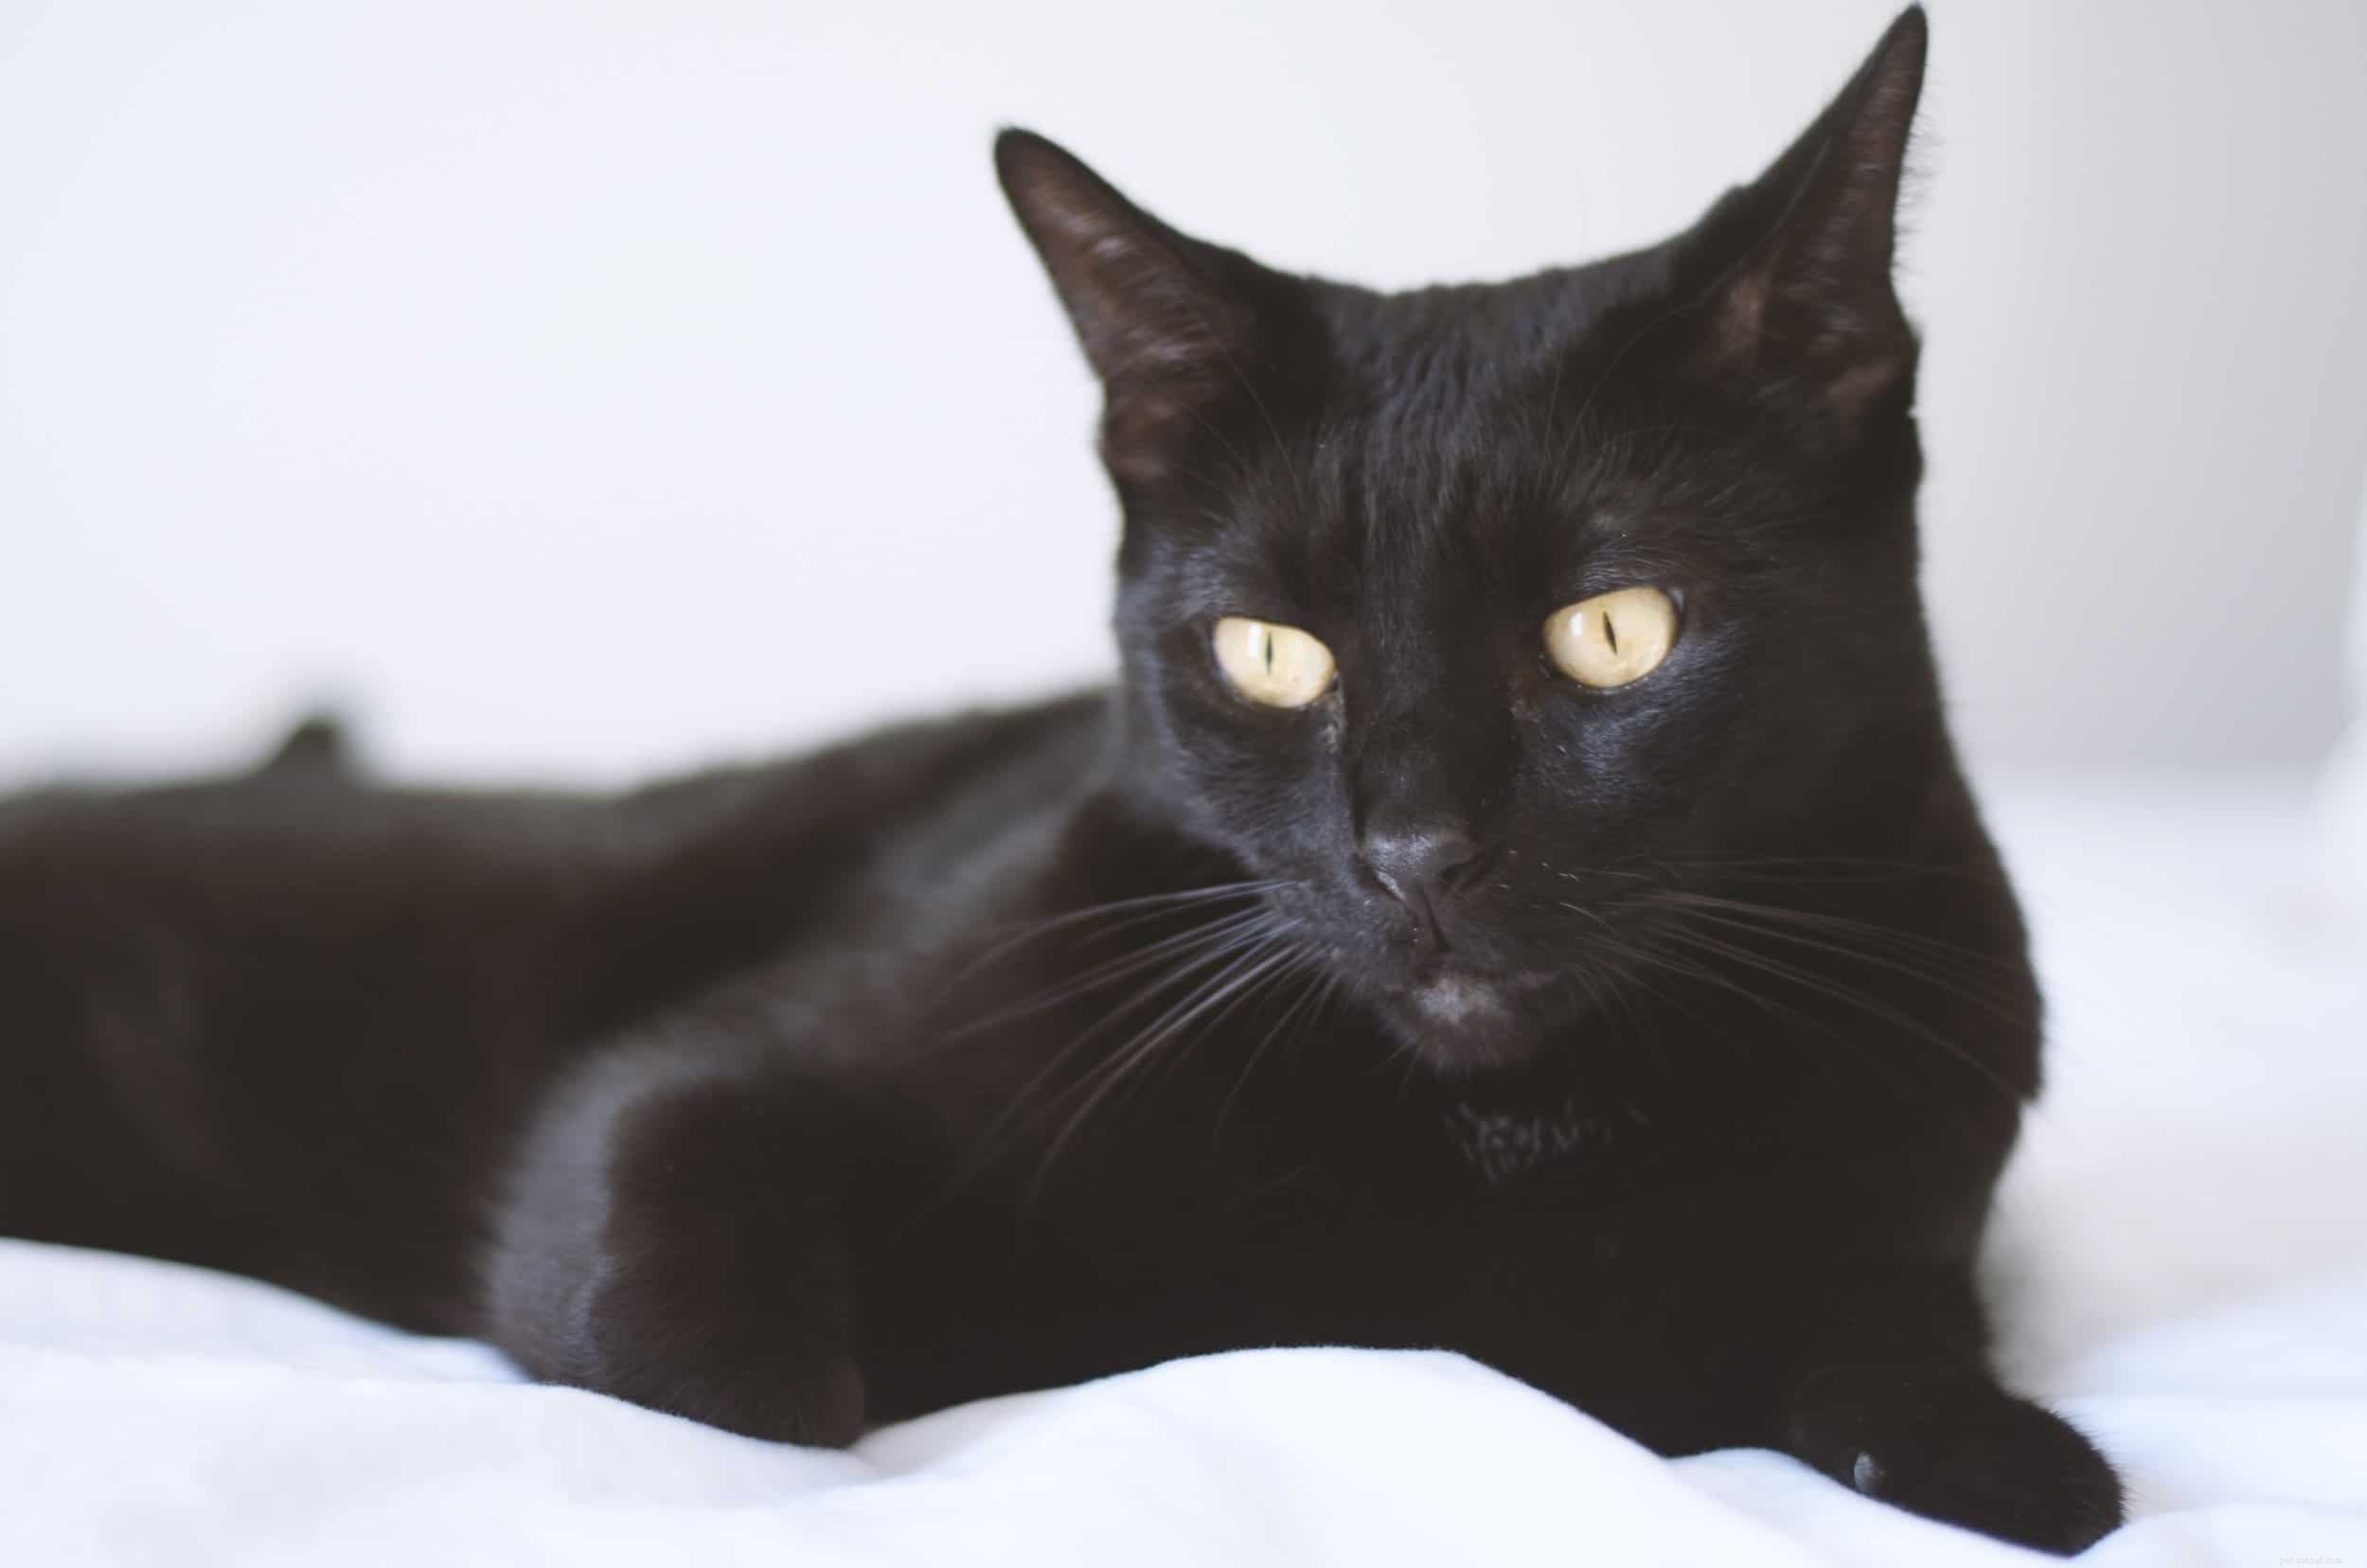 Pourquoi les chats noirs sont-ils considérés comme de la malchance ?